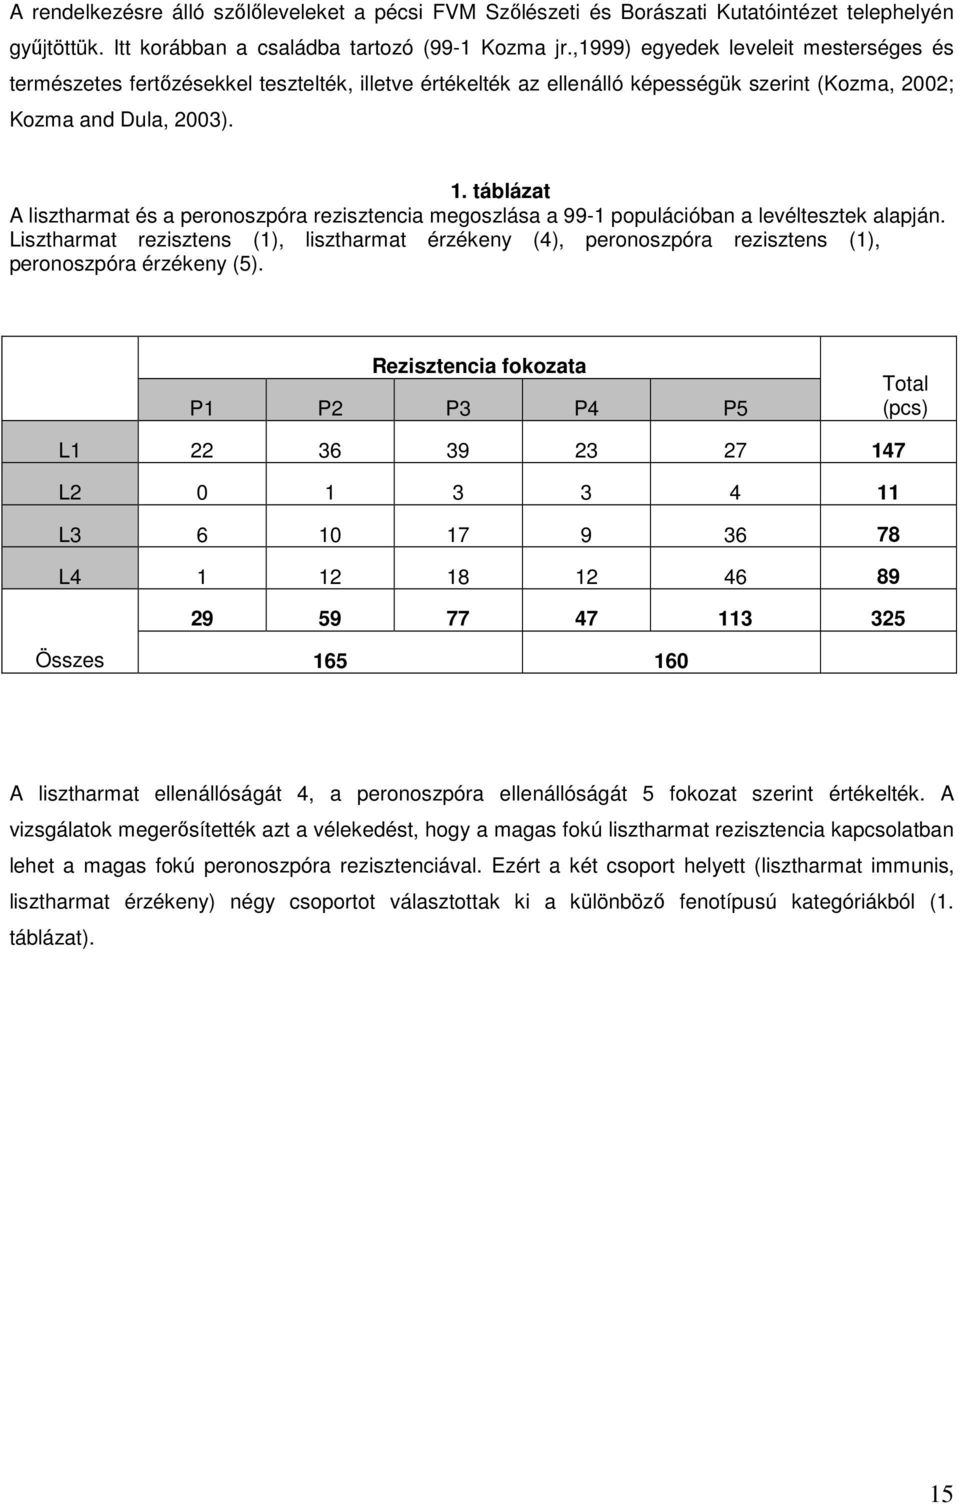 táblázat A lisztharmat és a peronoszpóra rezisztencia megoszlása a 99-1 populációban a levéltesztek alapján.